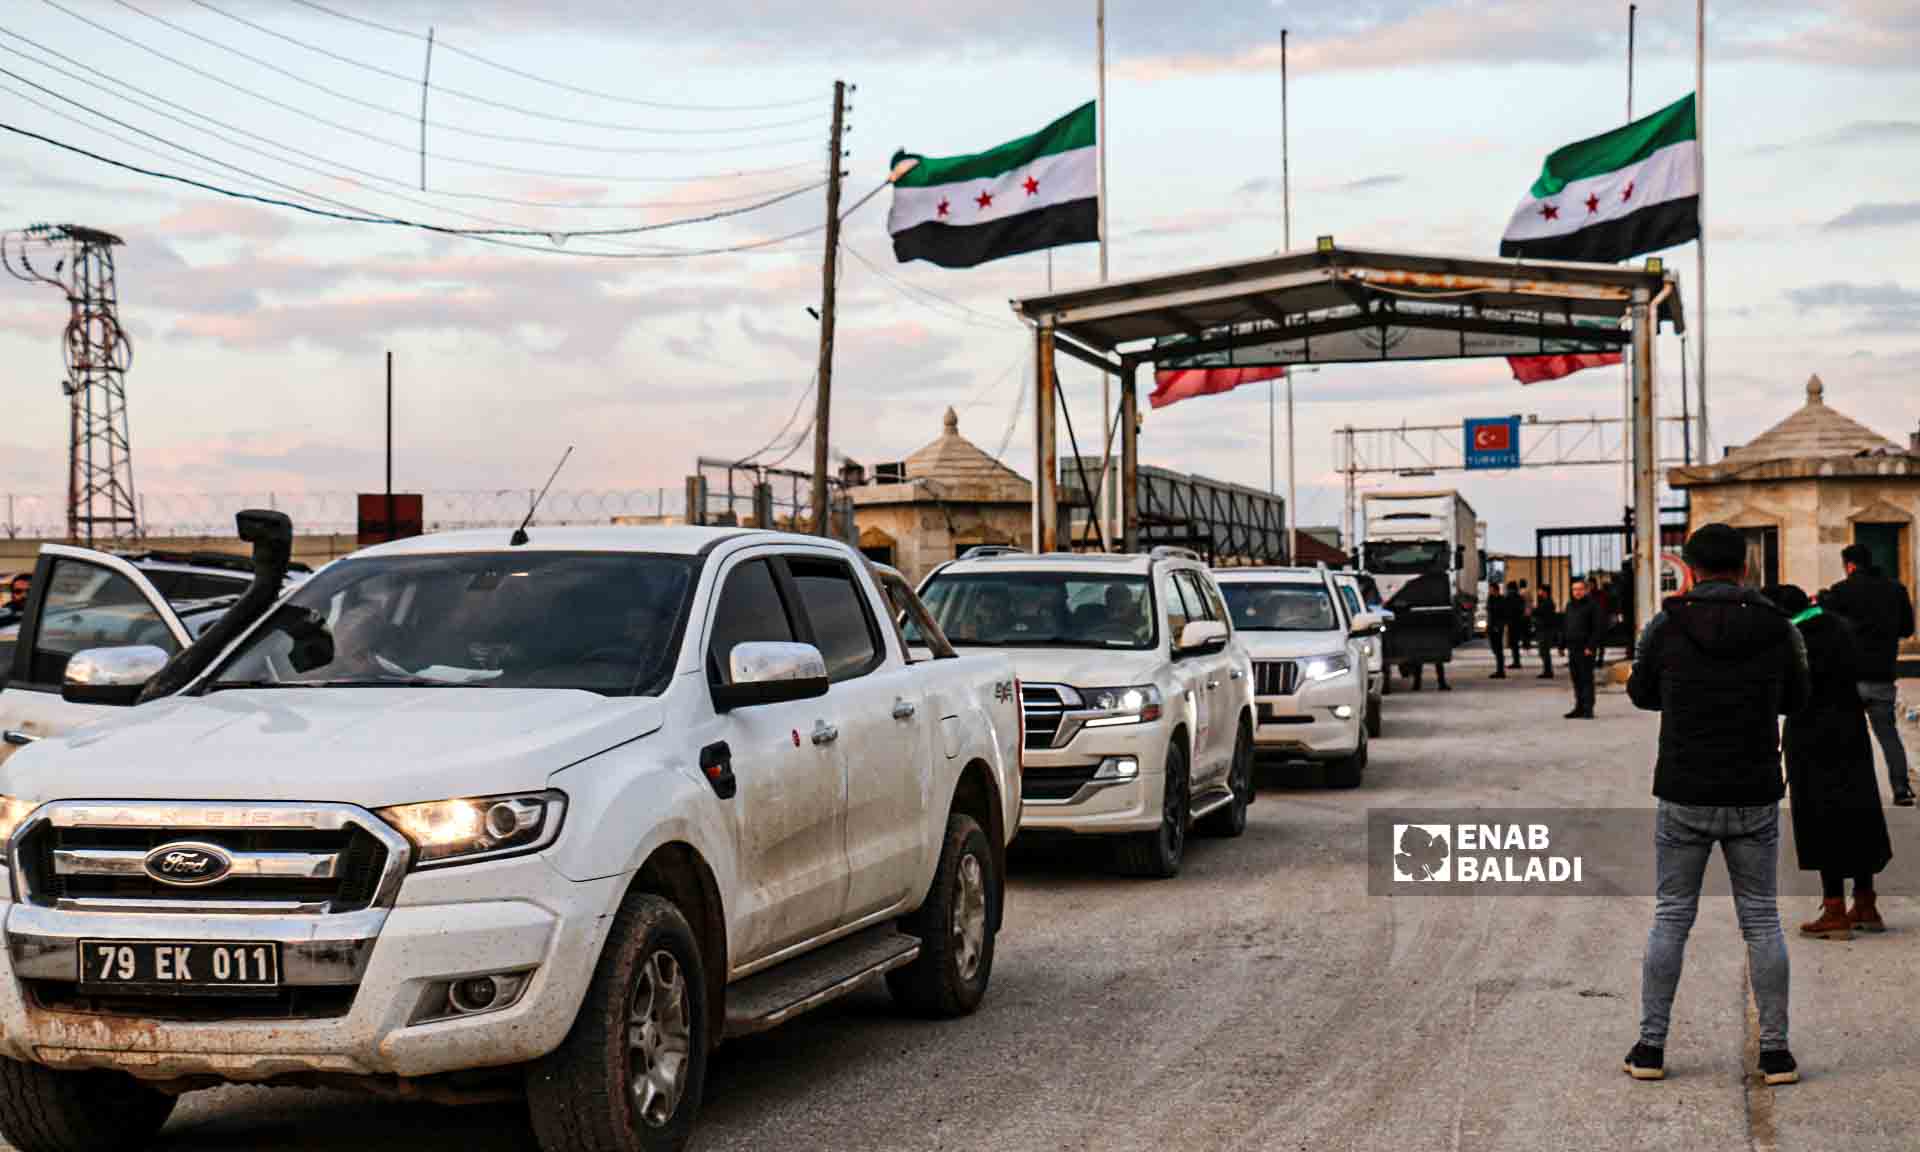 مساعدات إغاثية من "كردستان العراق" إلى مدينة جنديرس بريف حلب تدخل عبر معبر باب السلامة - 10شباط 2023 (عنب بلدي/ ديان جنباز)